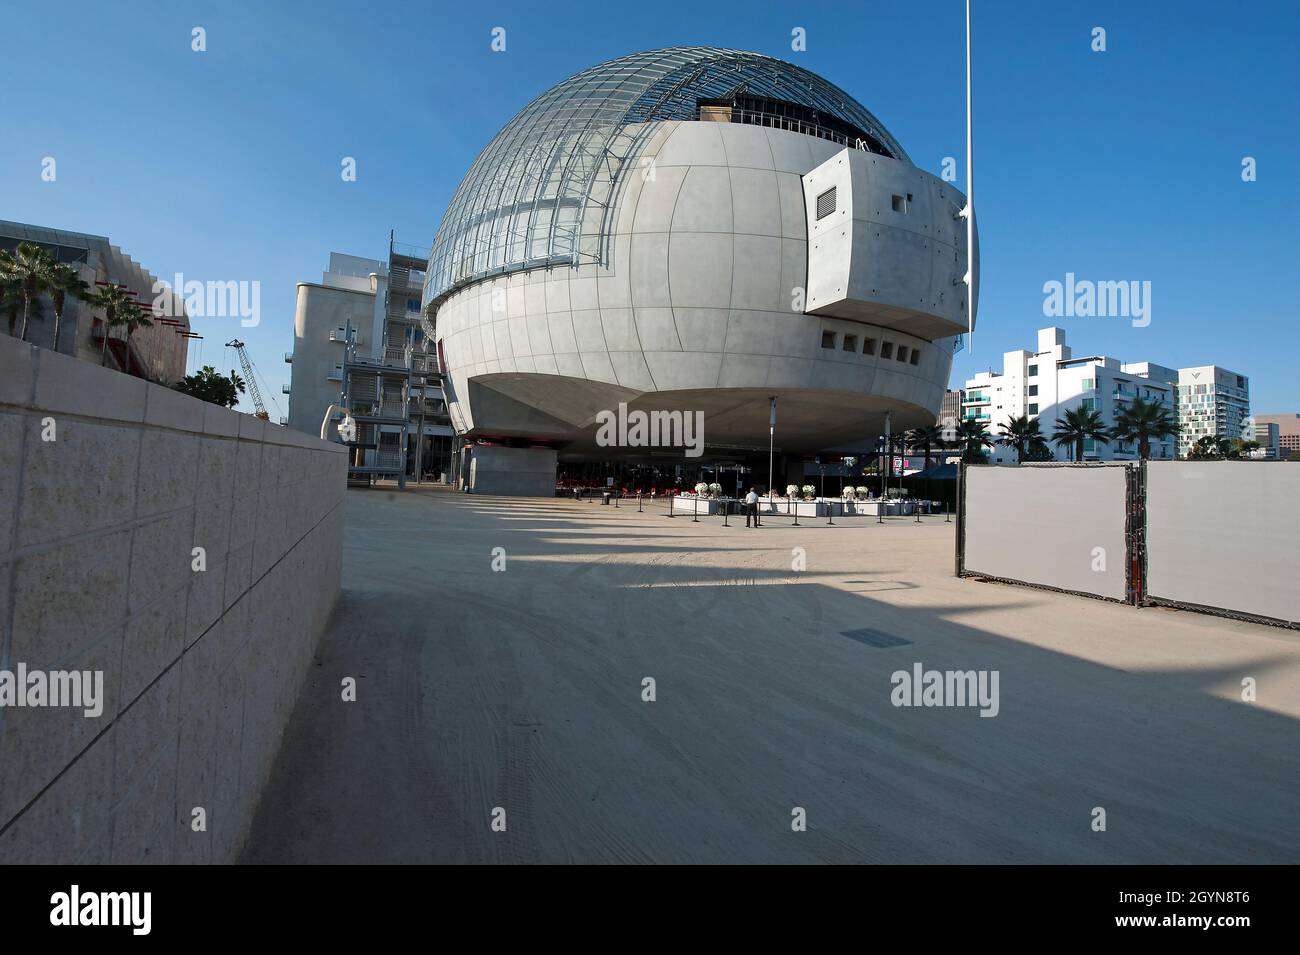 Das Sphere Building, das vom Architekten Renzo Piano am Academy Museum of Motion Picturs in Los Angeles, Kalifornien, entworfen wurde Stockfoto